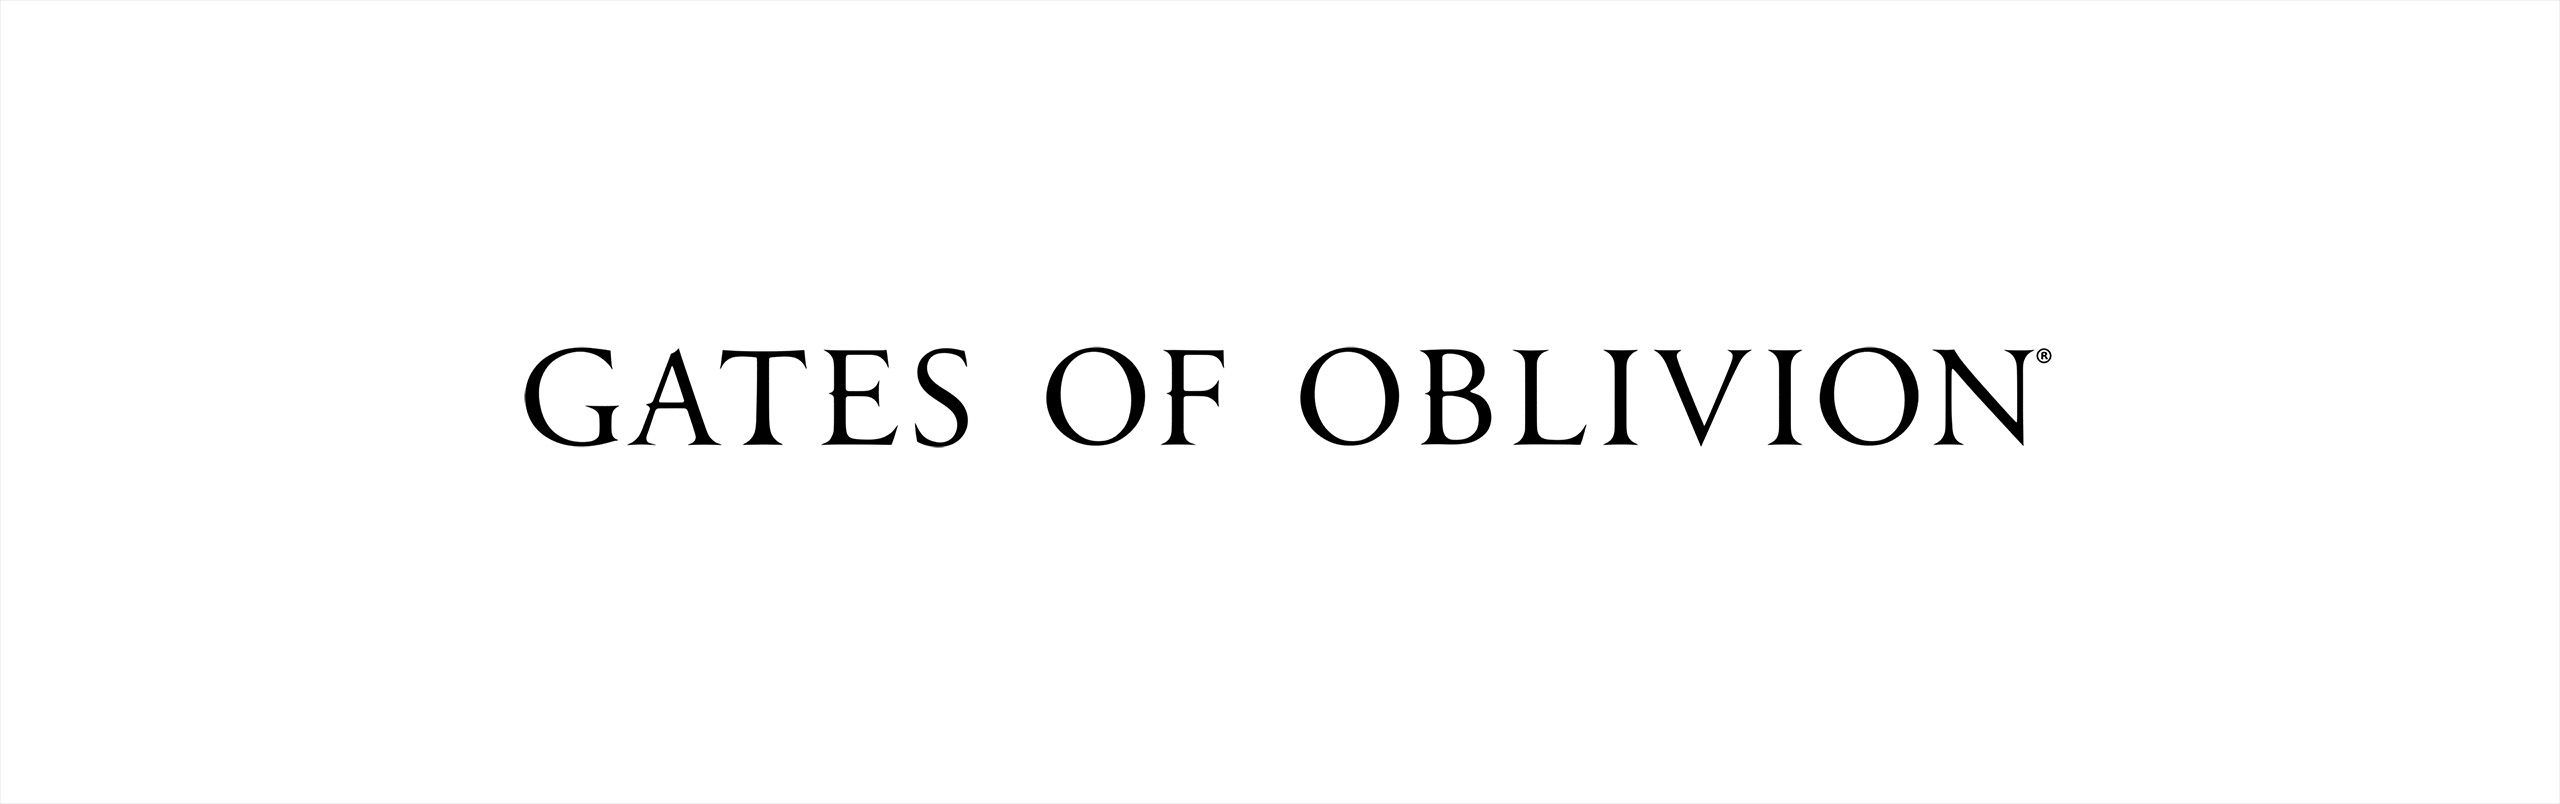 ESO_Gates of Oblivion_Logotype_BW